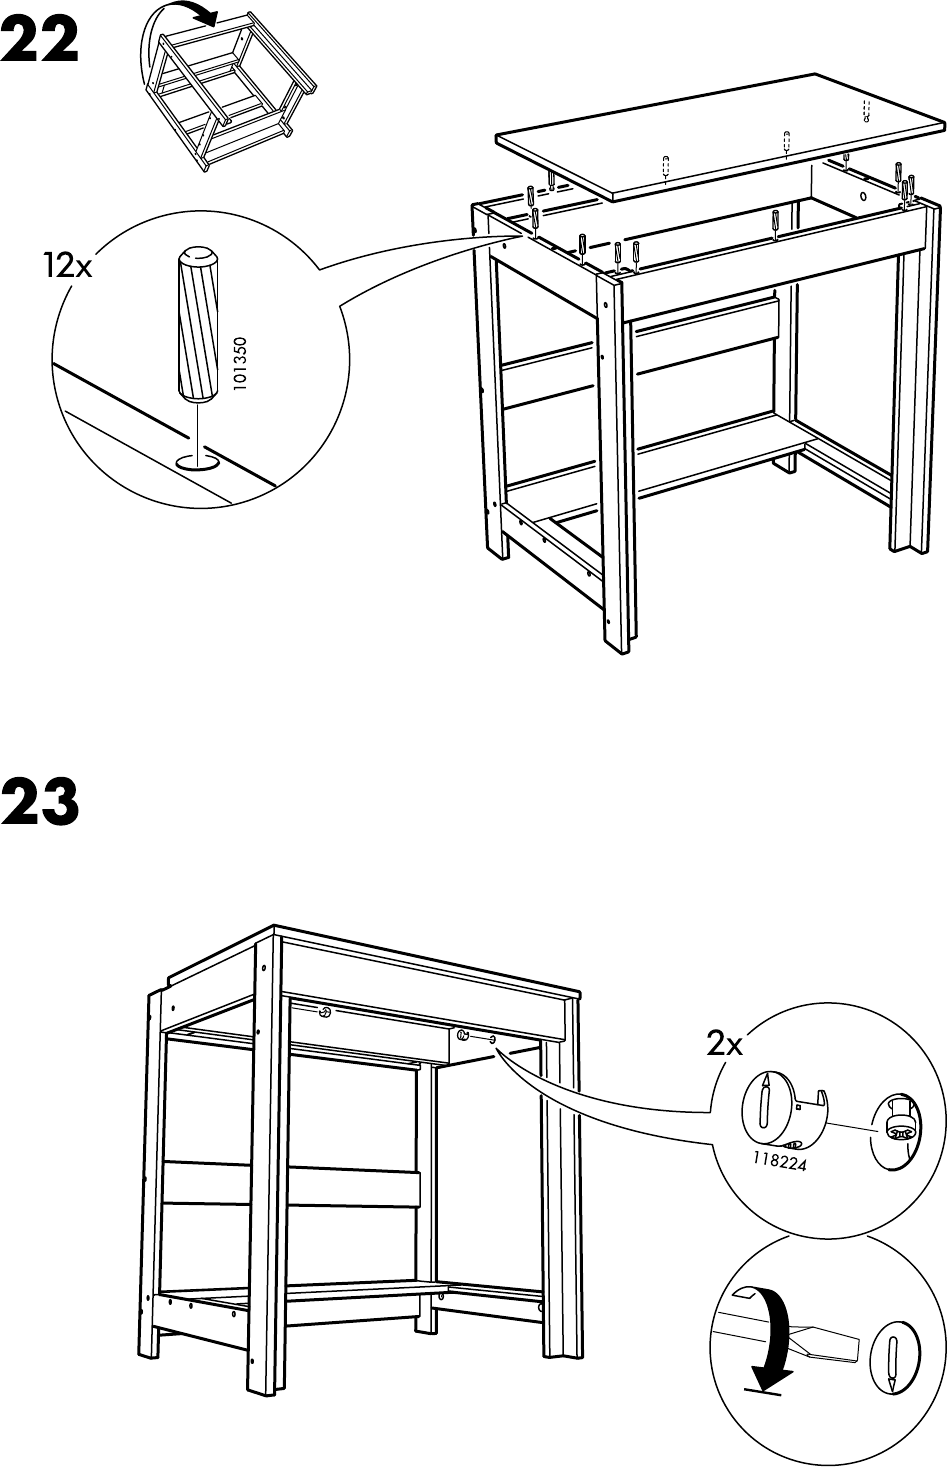 Bedienungsanleitung Ikea Laiva Bureau Seite 16 Von 16 Danisch